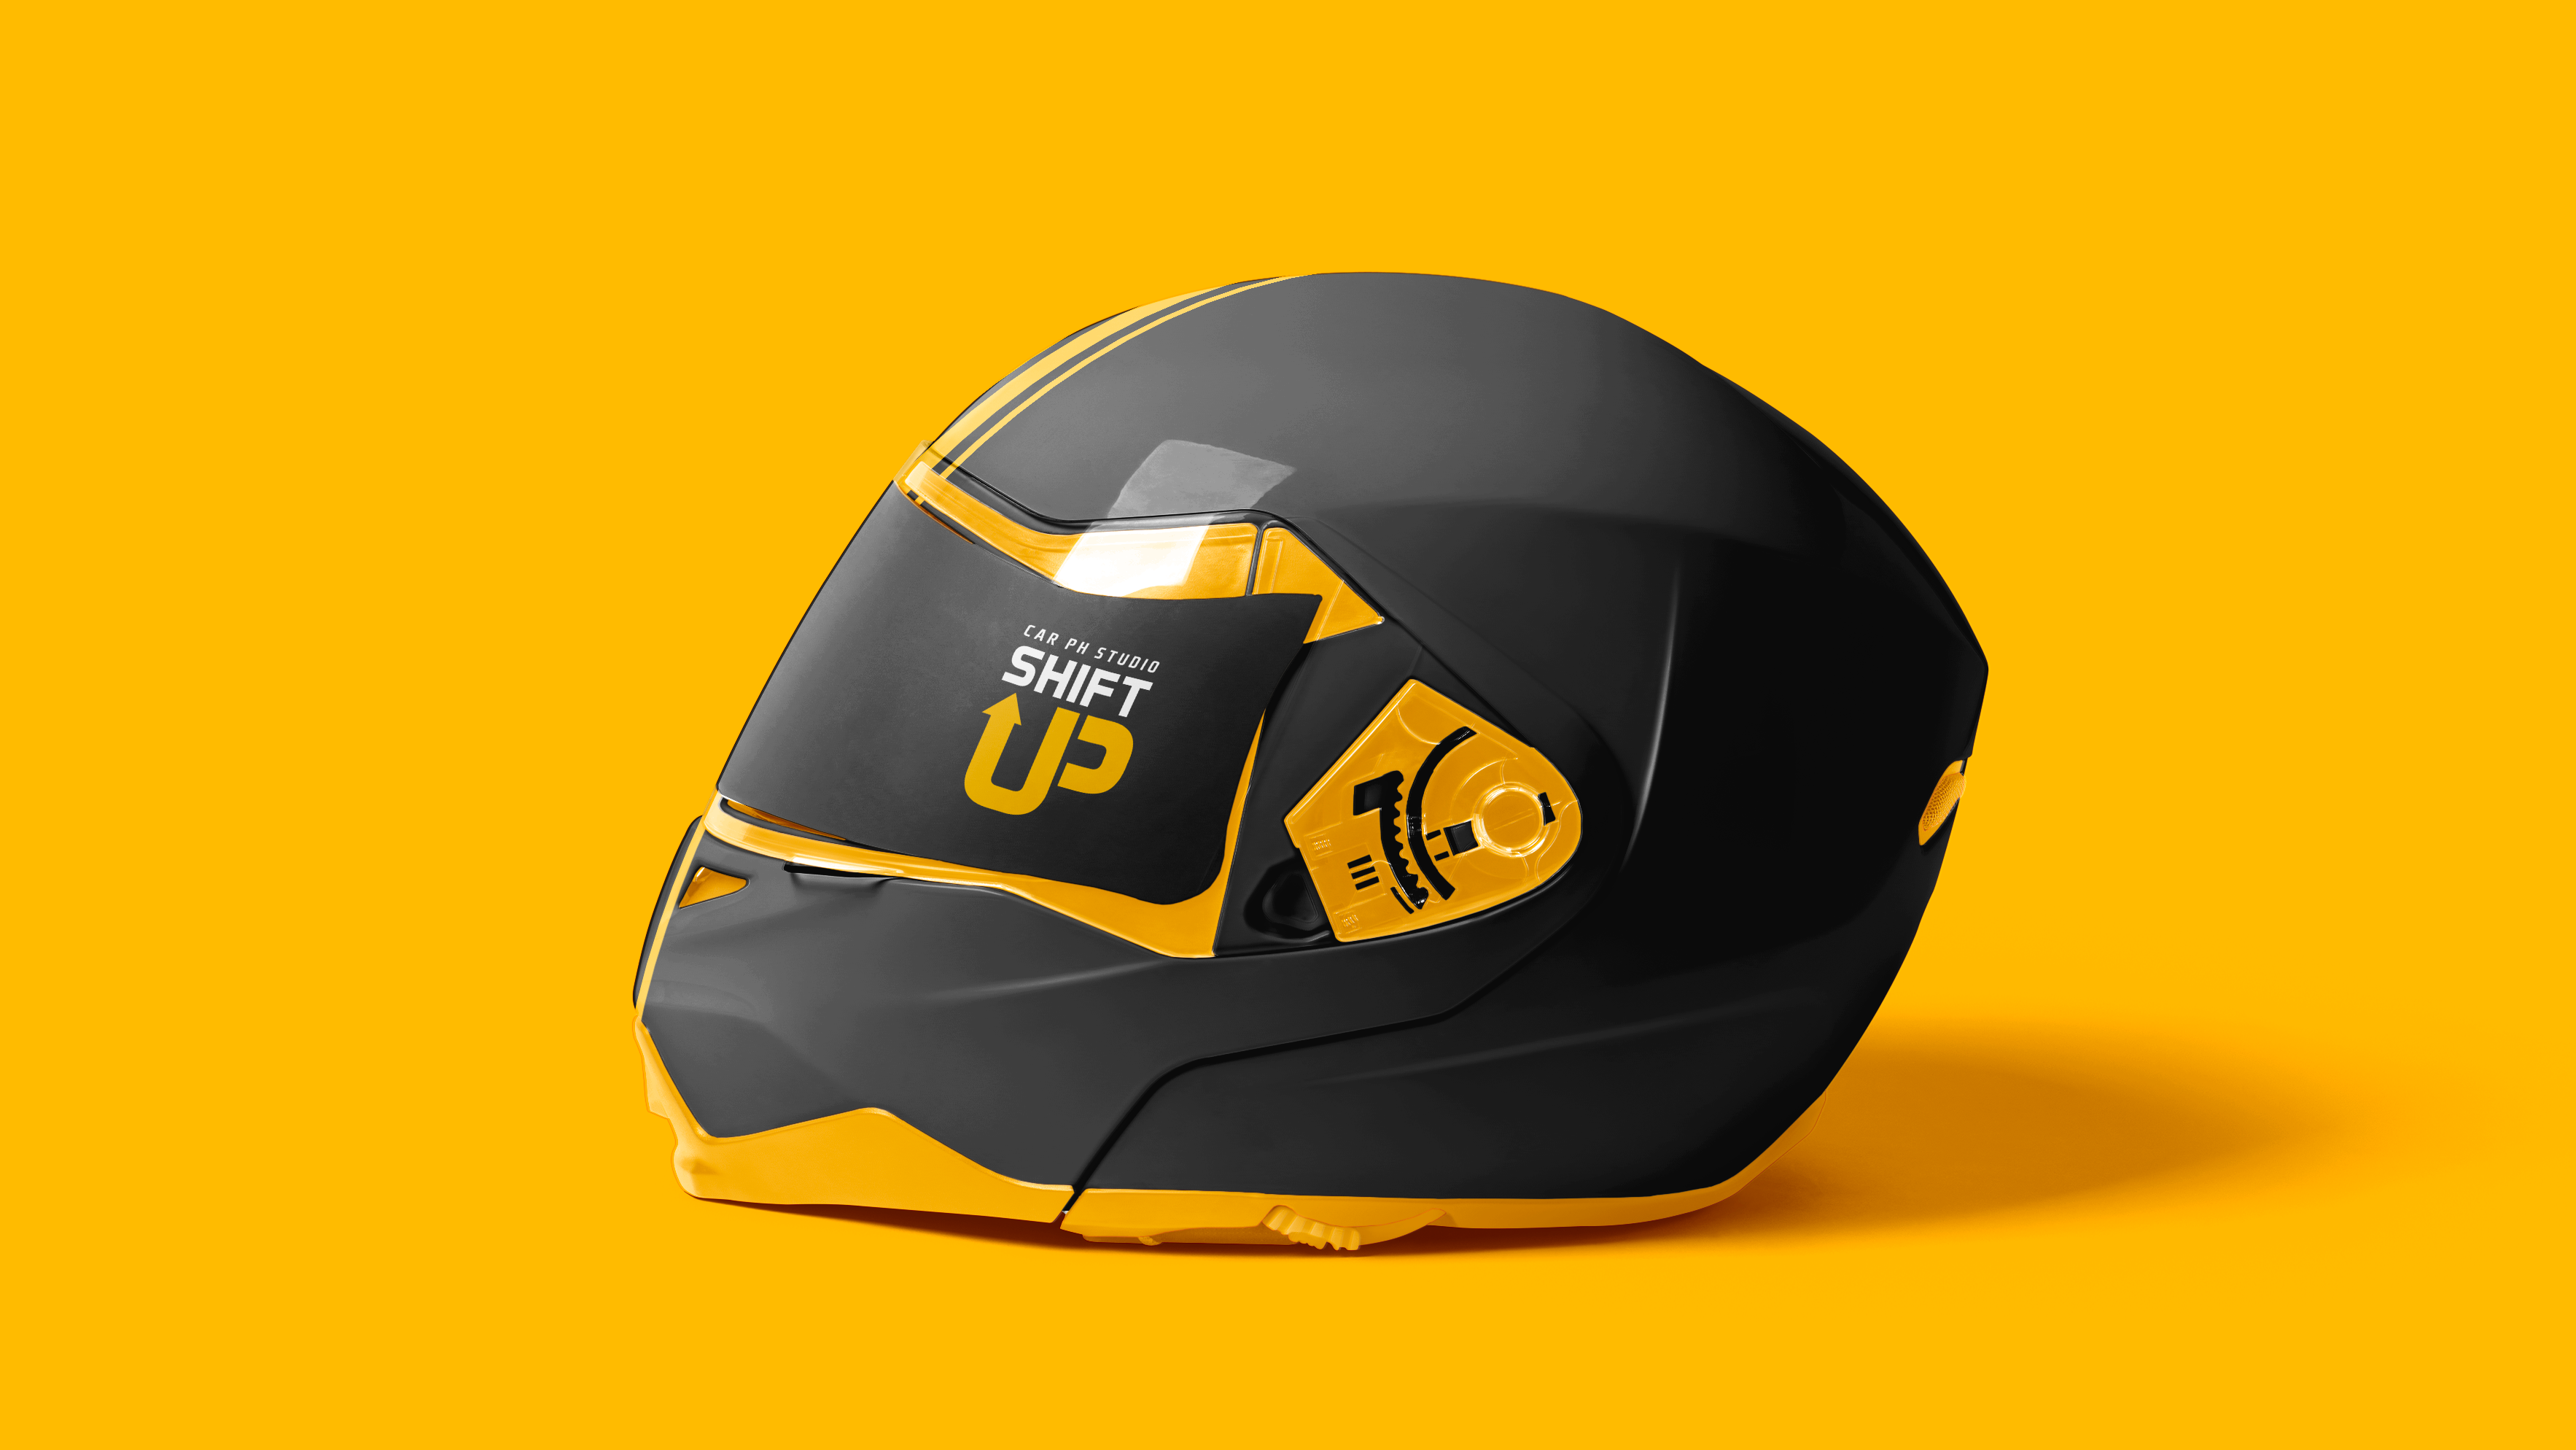 Anteprima di un casco personalizzato realizzato per Shift-Up